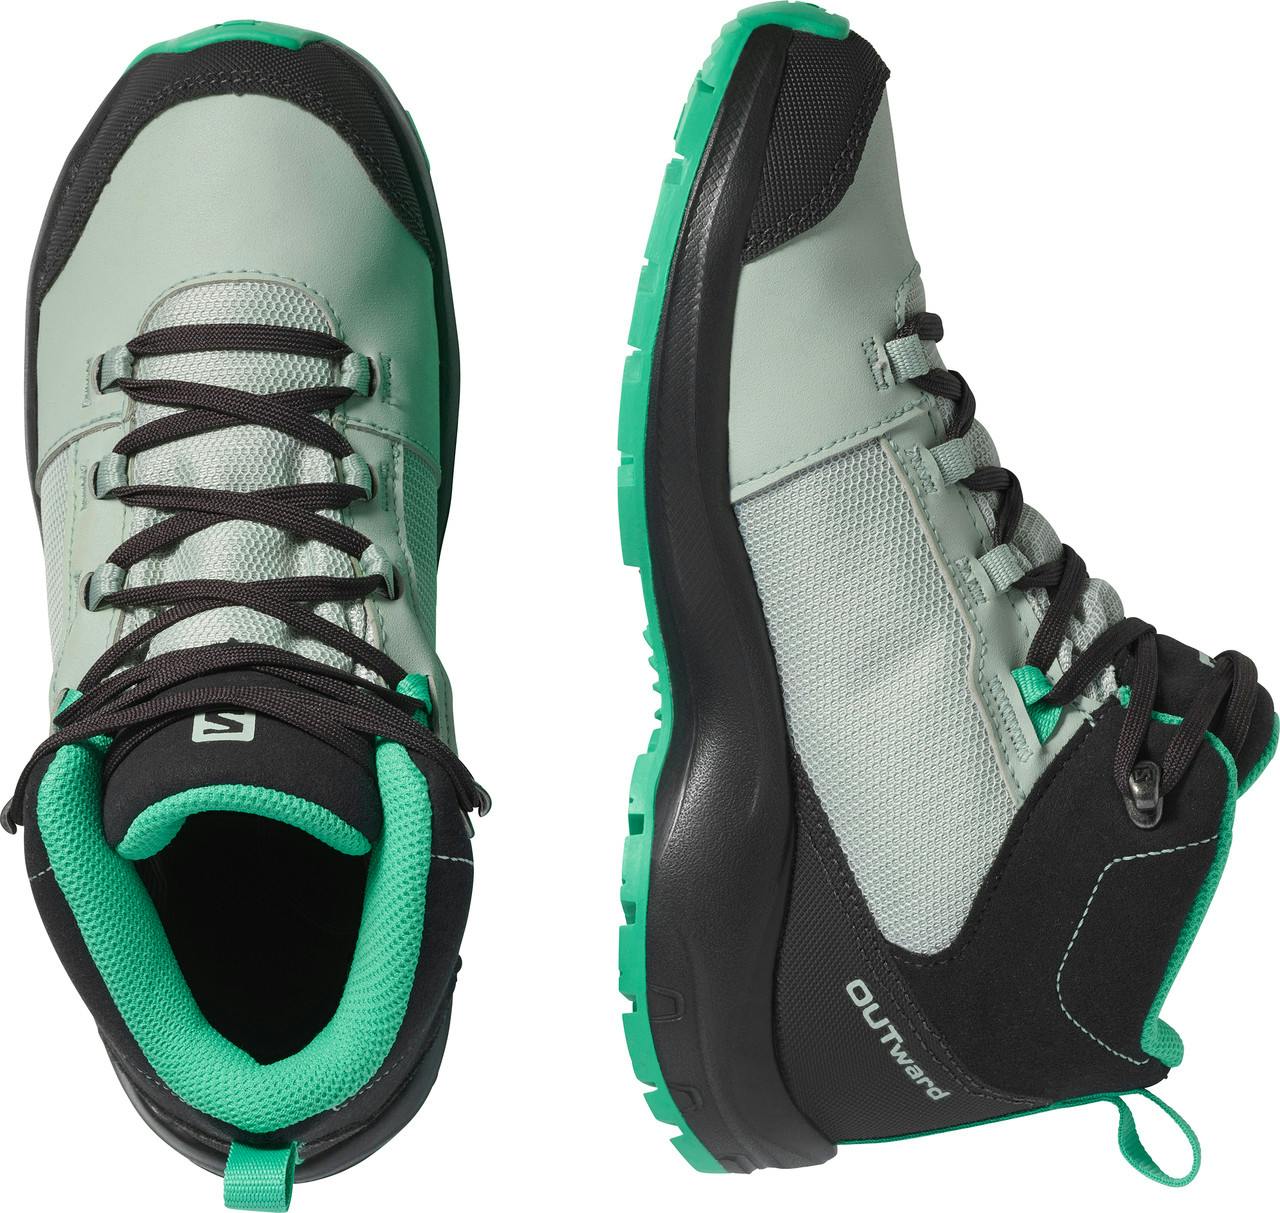 Chaussures de randonnée Outward CSWP Fantôme/gris eau/menthe